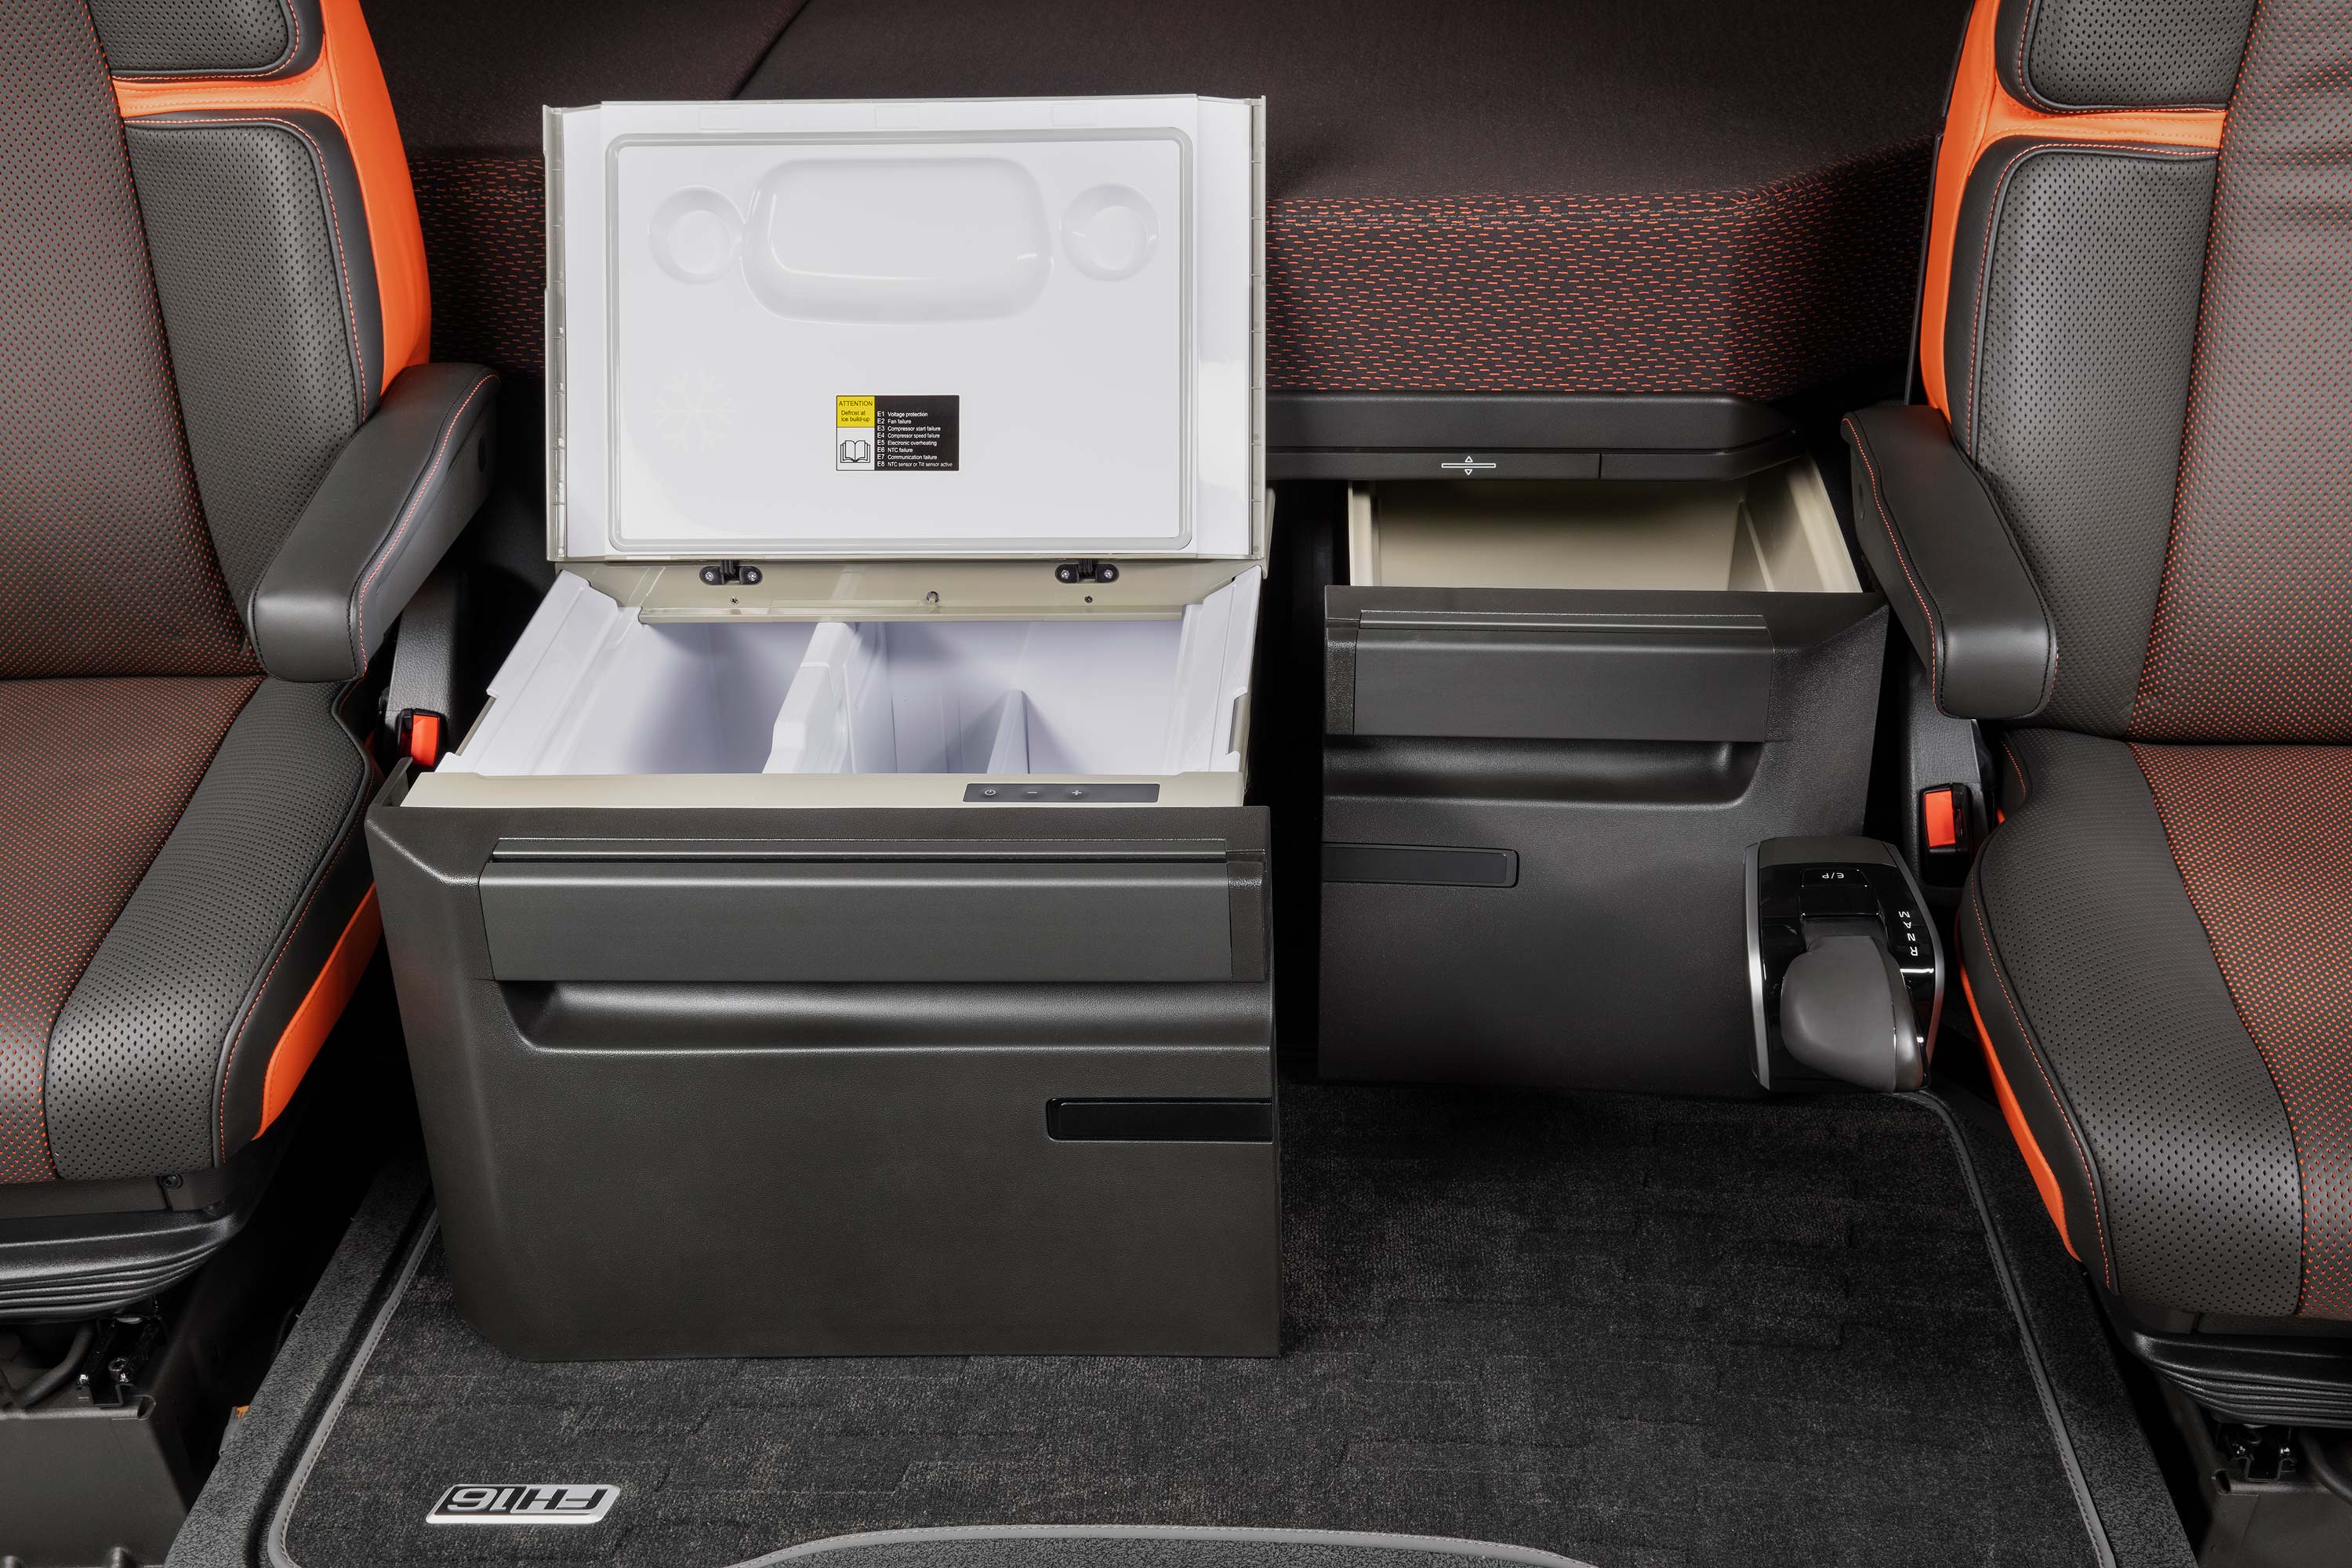 Εάν χρειαστεί, το Volvo FH16 συνοδεύεται από διπλά ψυγεία.